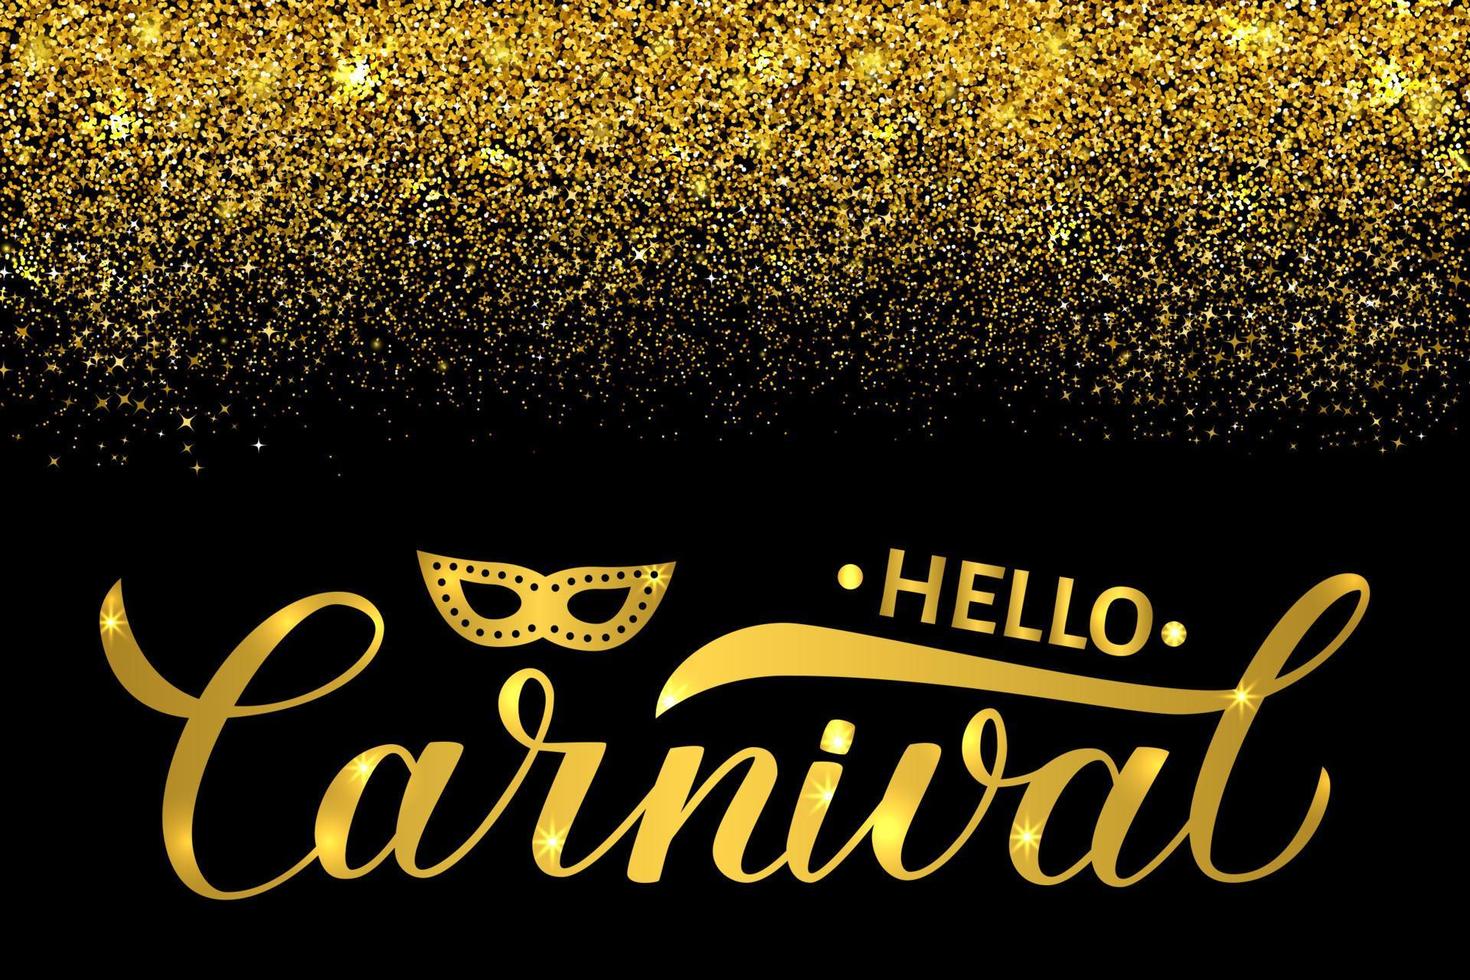 Olá carnaval letras douradas brilhantes sobre fundo preto com confetes de glitter dourados. masquerade party vector template poster ou convite para carnaval brasileiro no rio ou mardi gras em nova orleans.